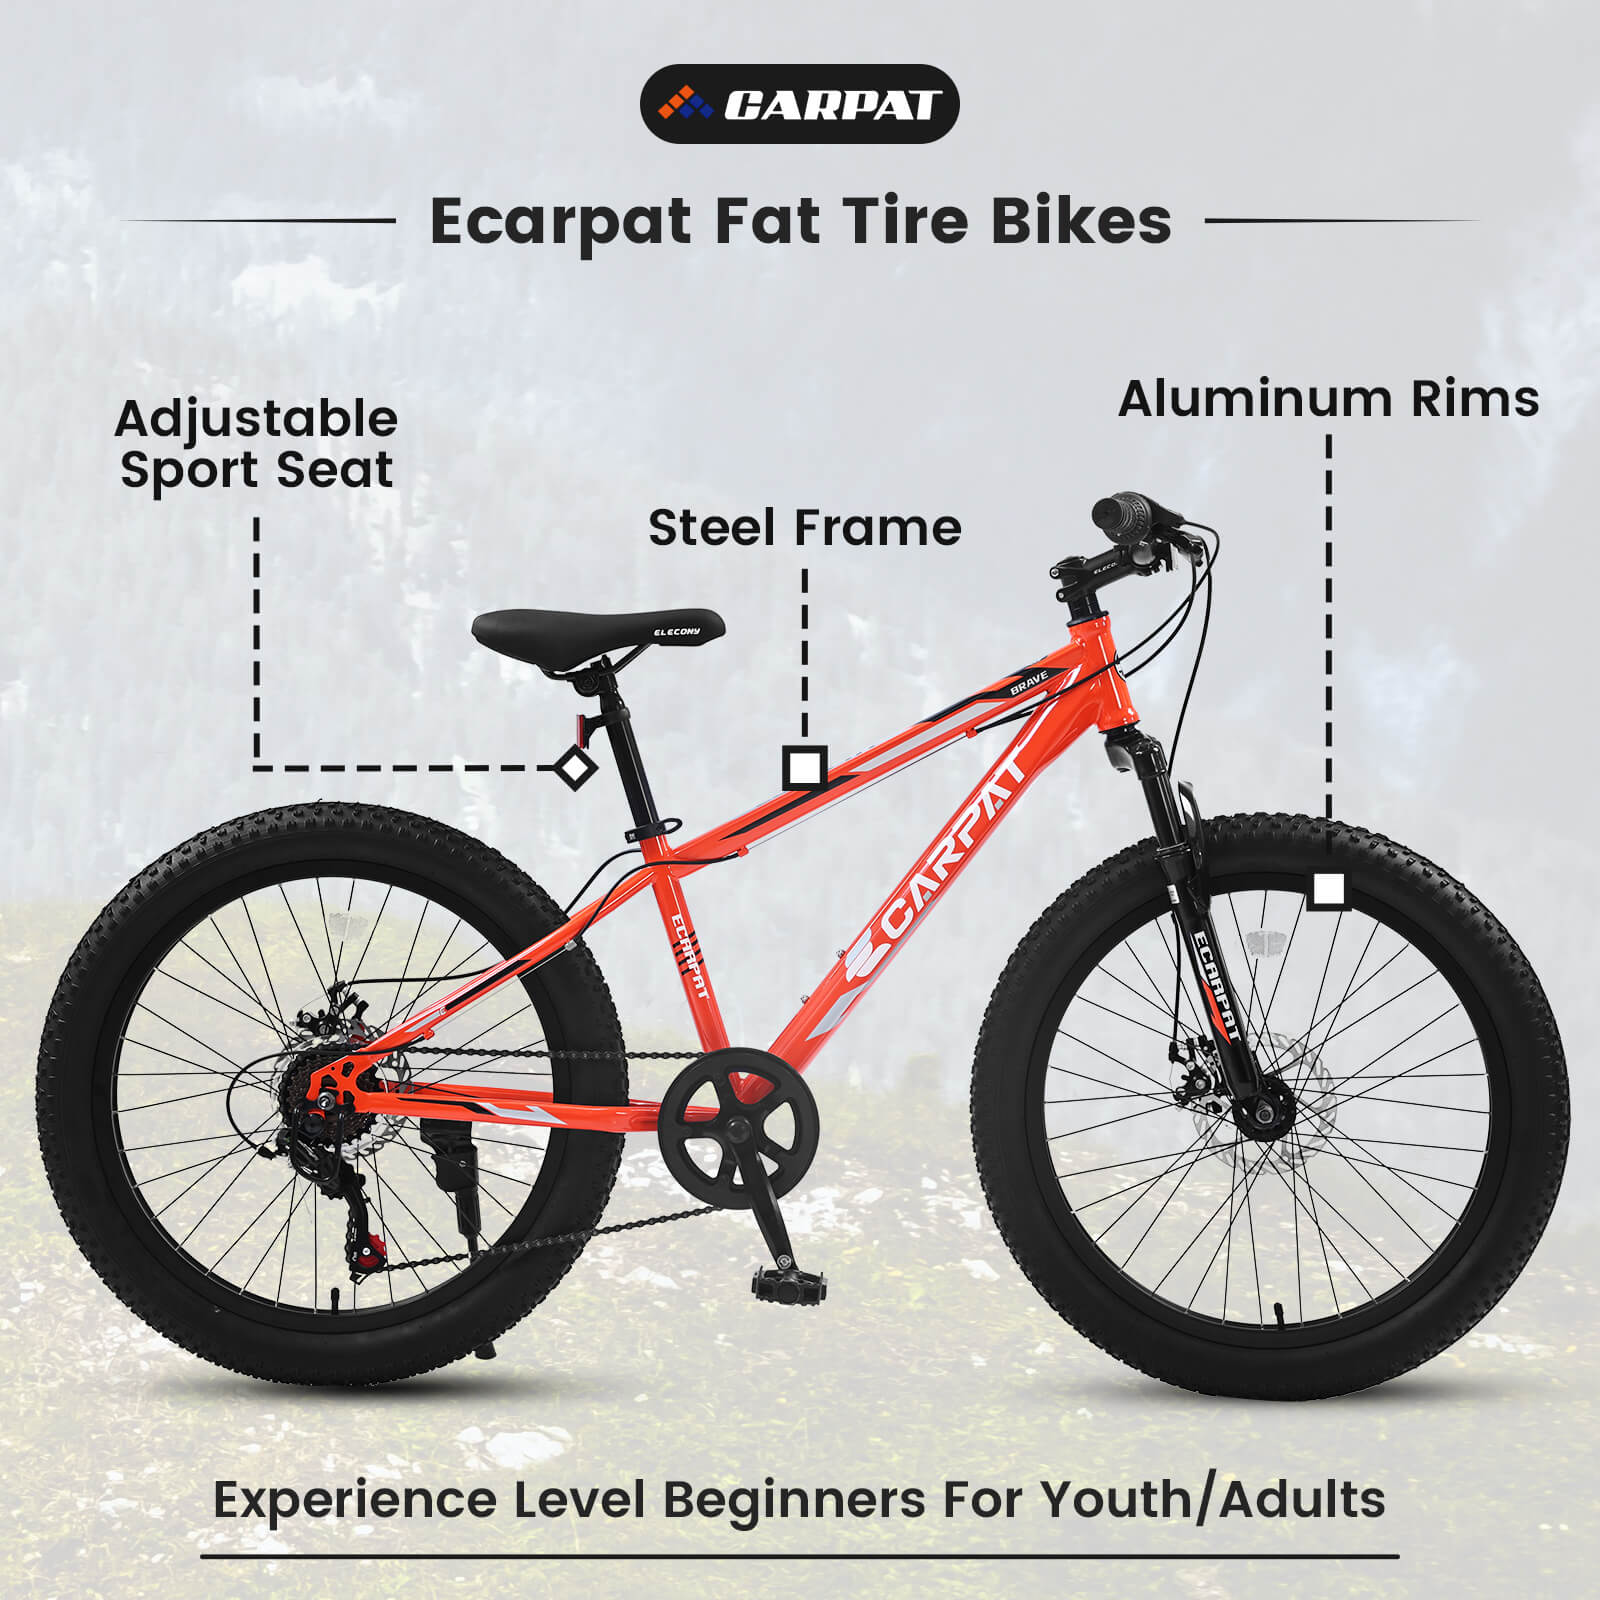 Ecarpat Elecony 24"×3" Fat Tyre Bike details